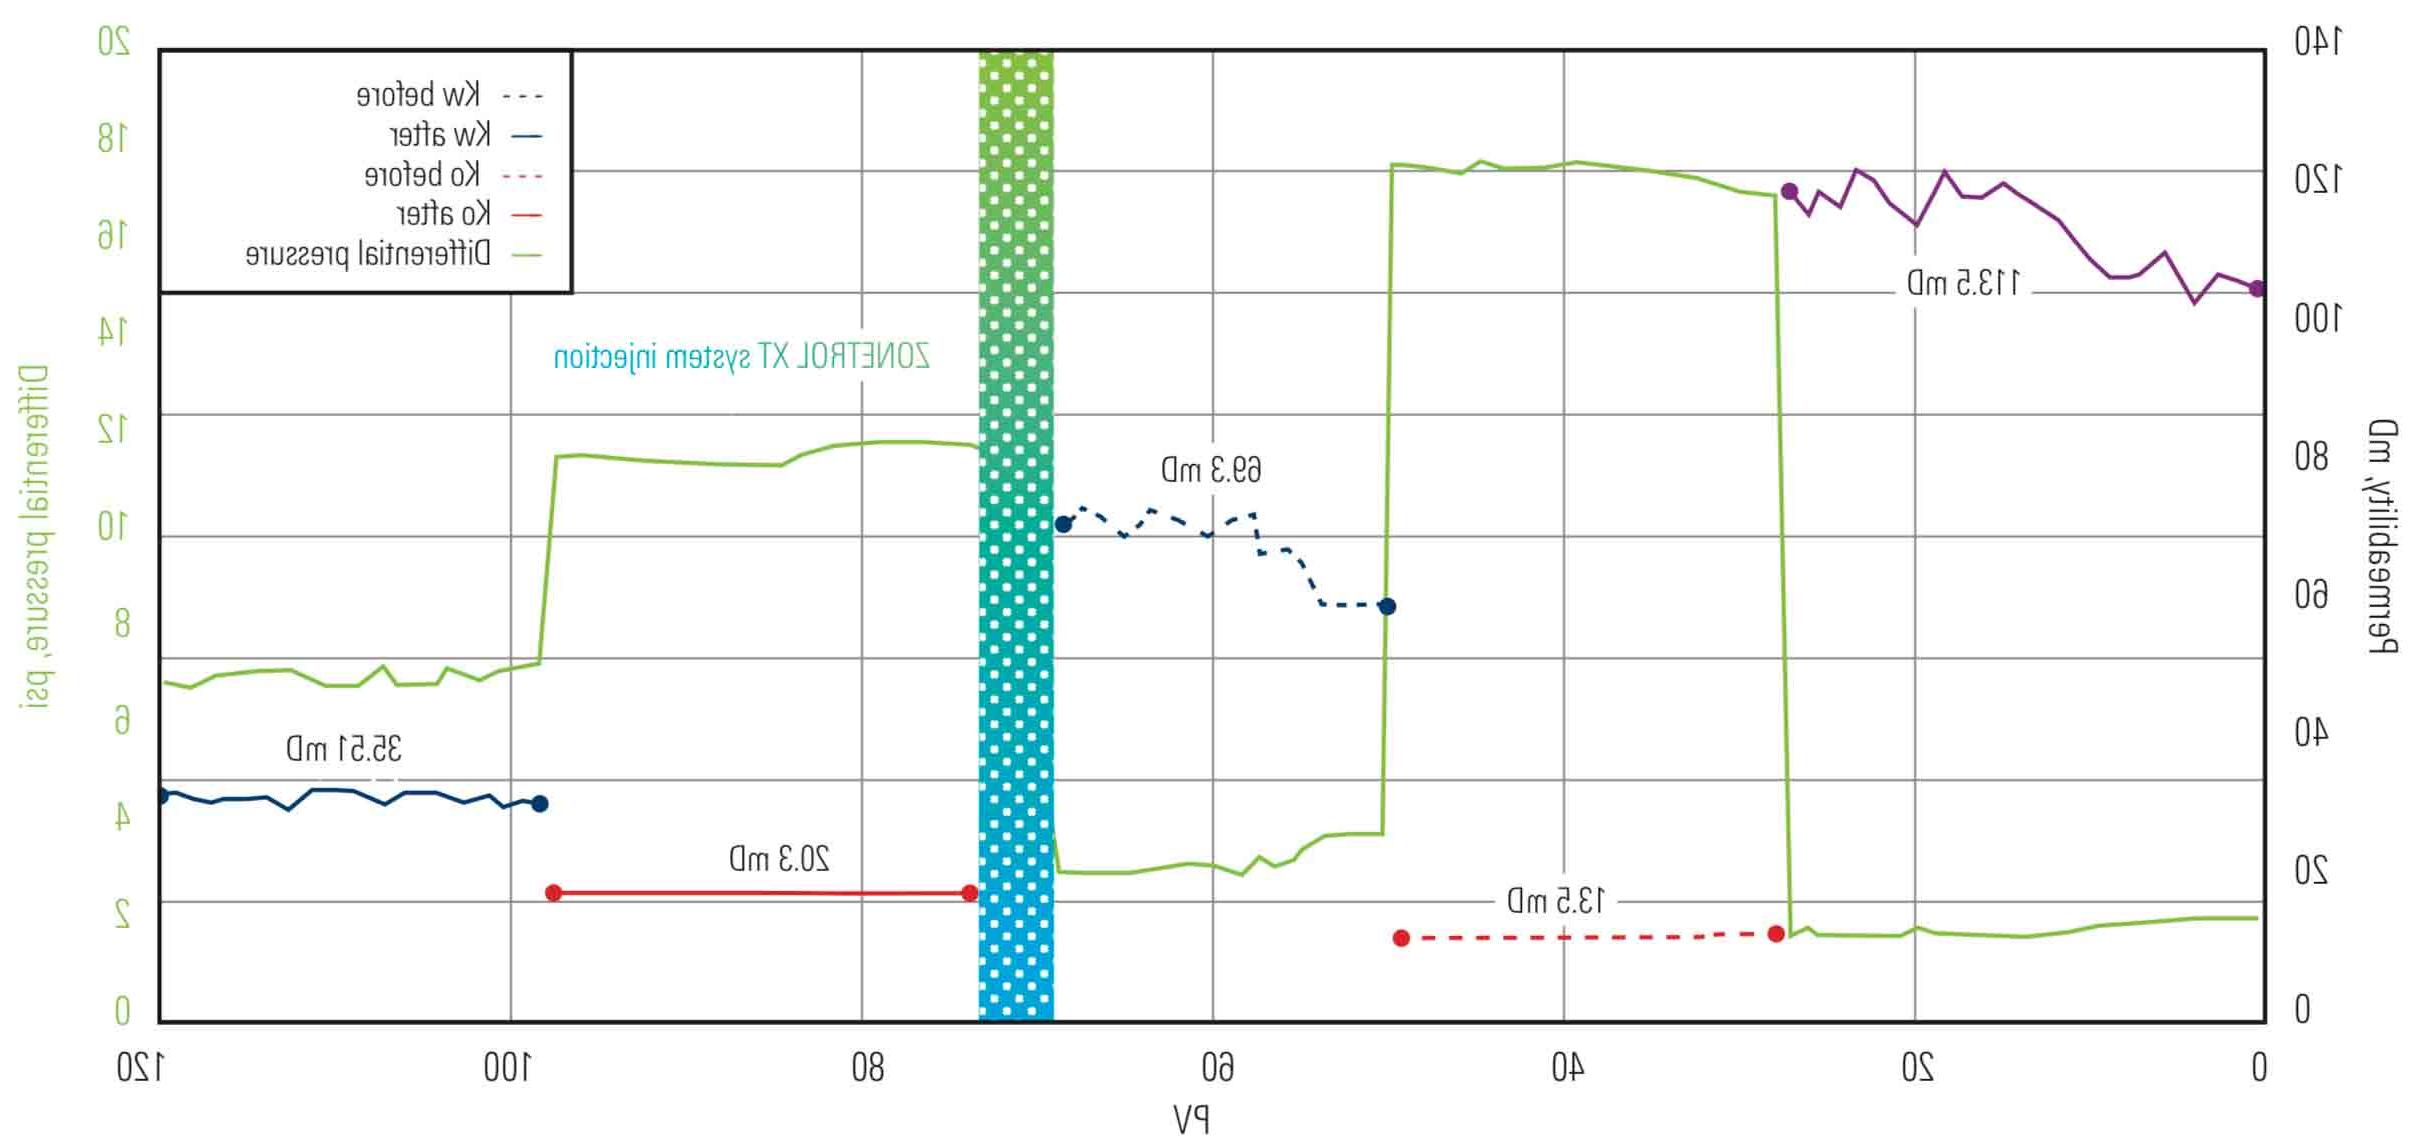 在这个例子中, ZONETROL XT系统将油渗透率(Ko)提高了48%，同时有效降低了水渗透率(Kw)近49%.